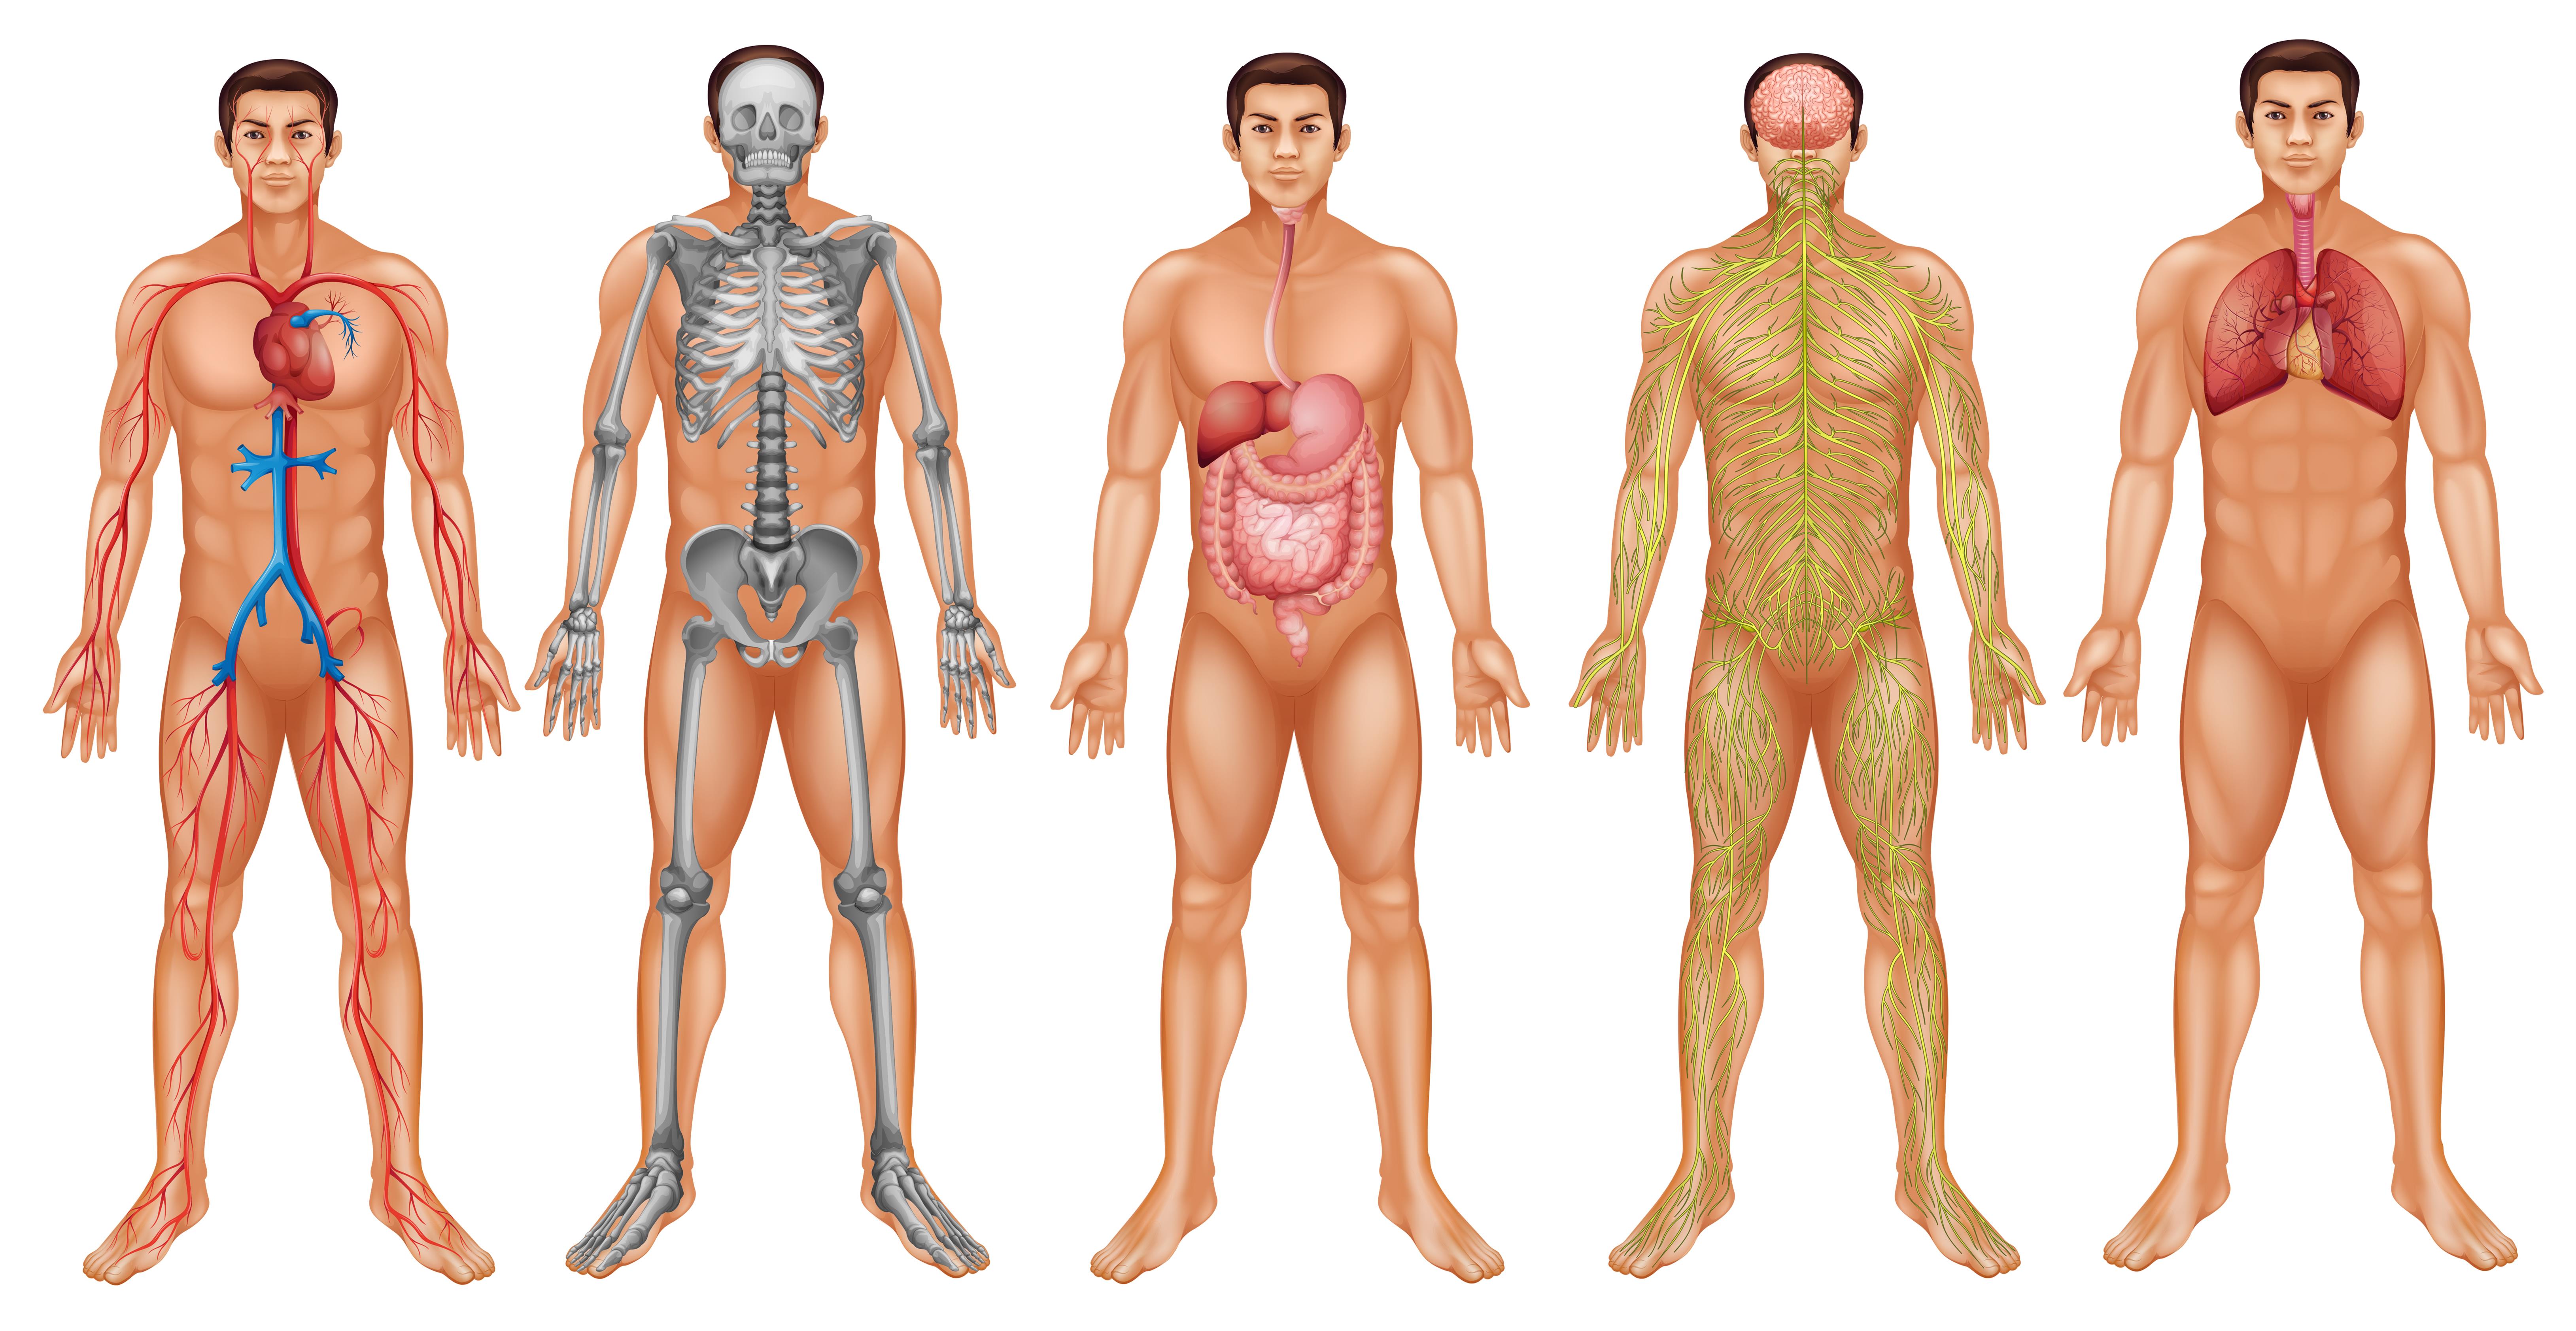 Множественный организм. Человеческий организм. Анатомия женского тела. Тело юноши анатомия.